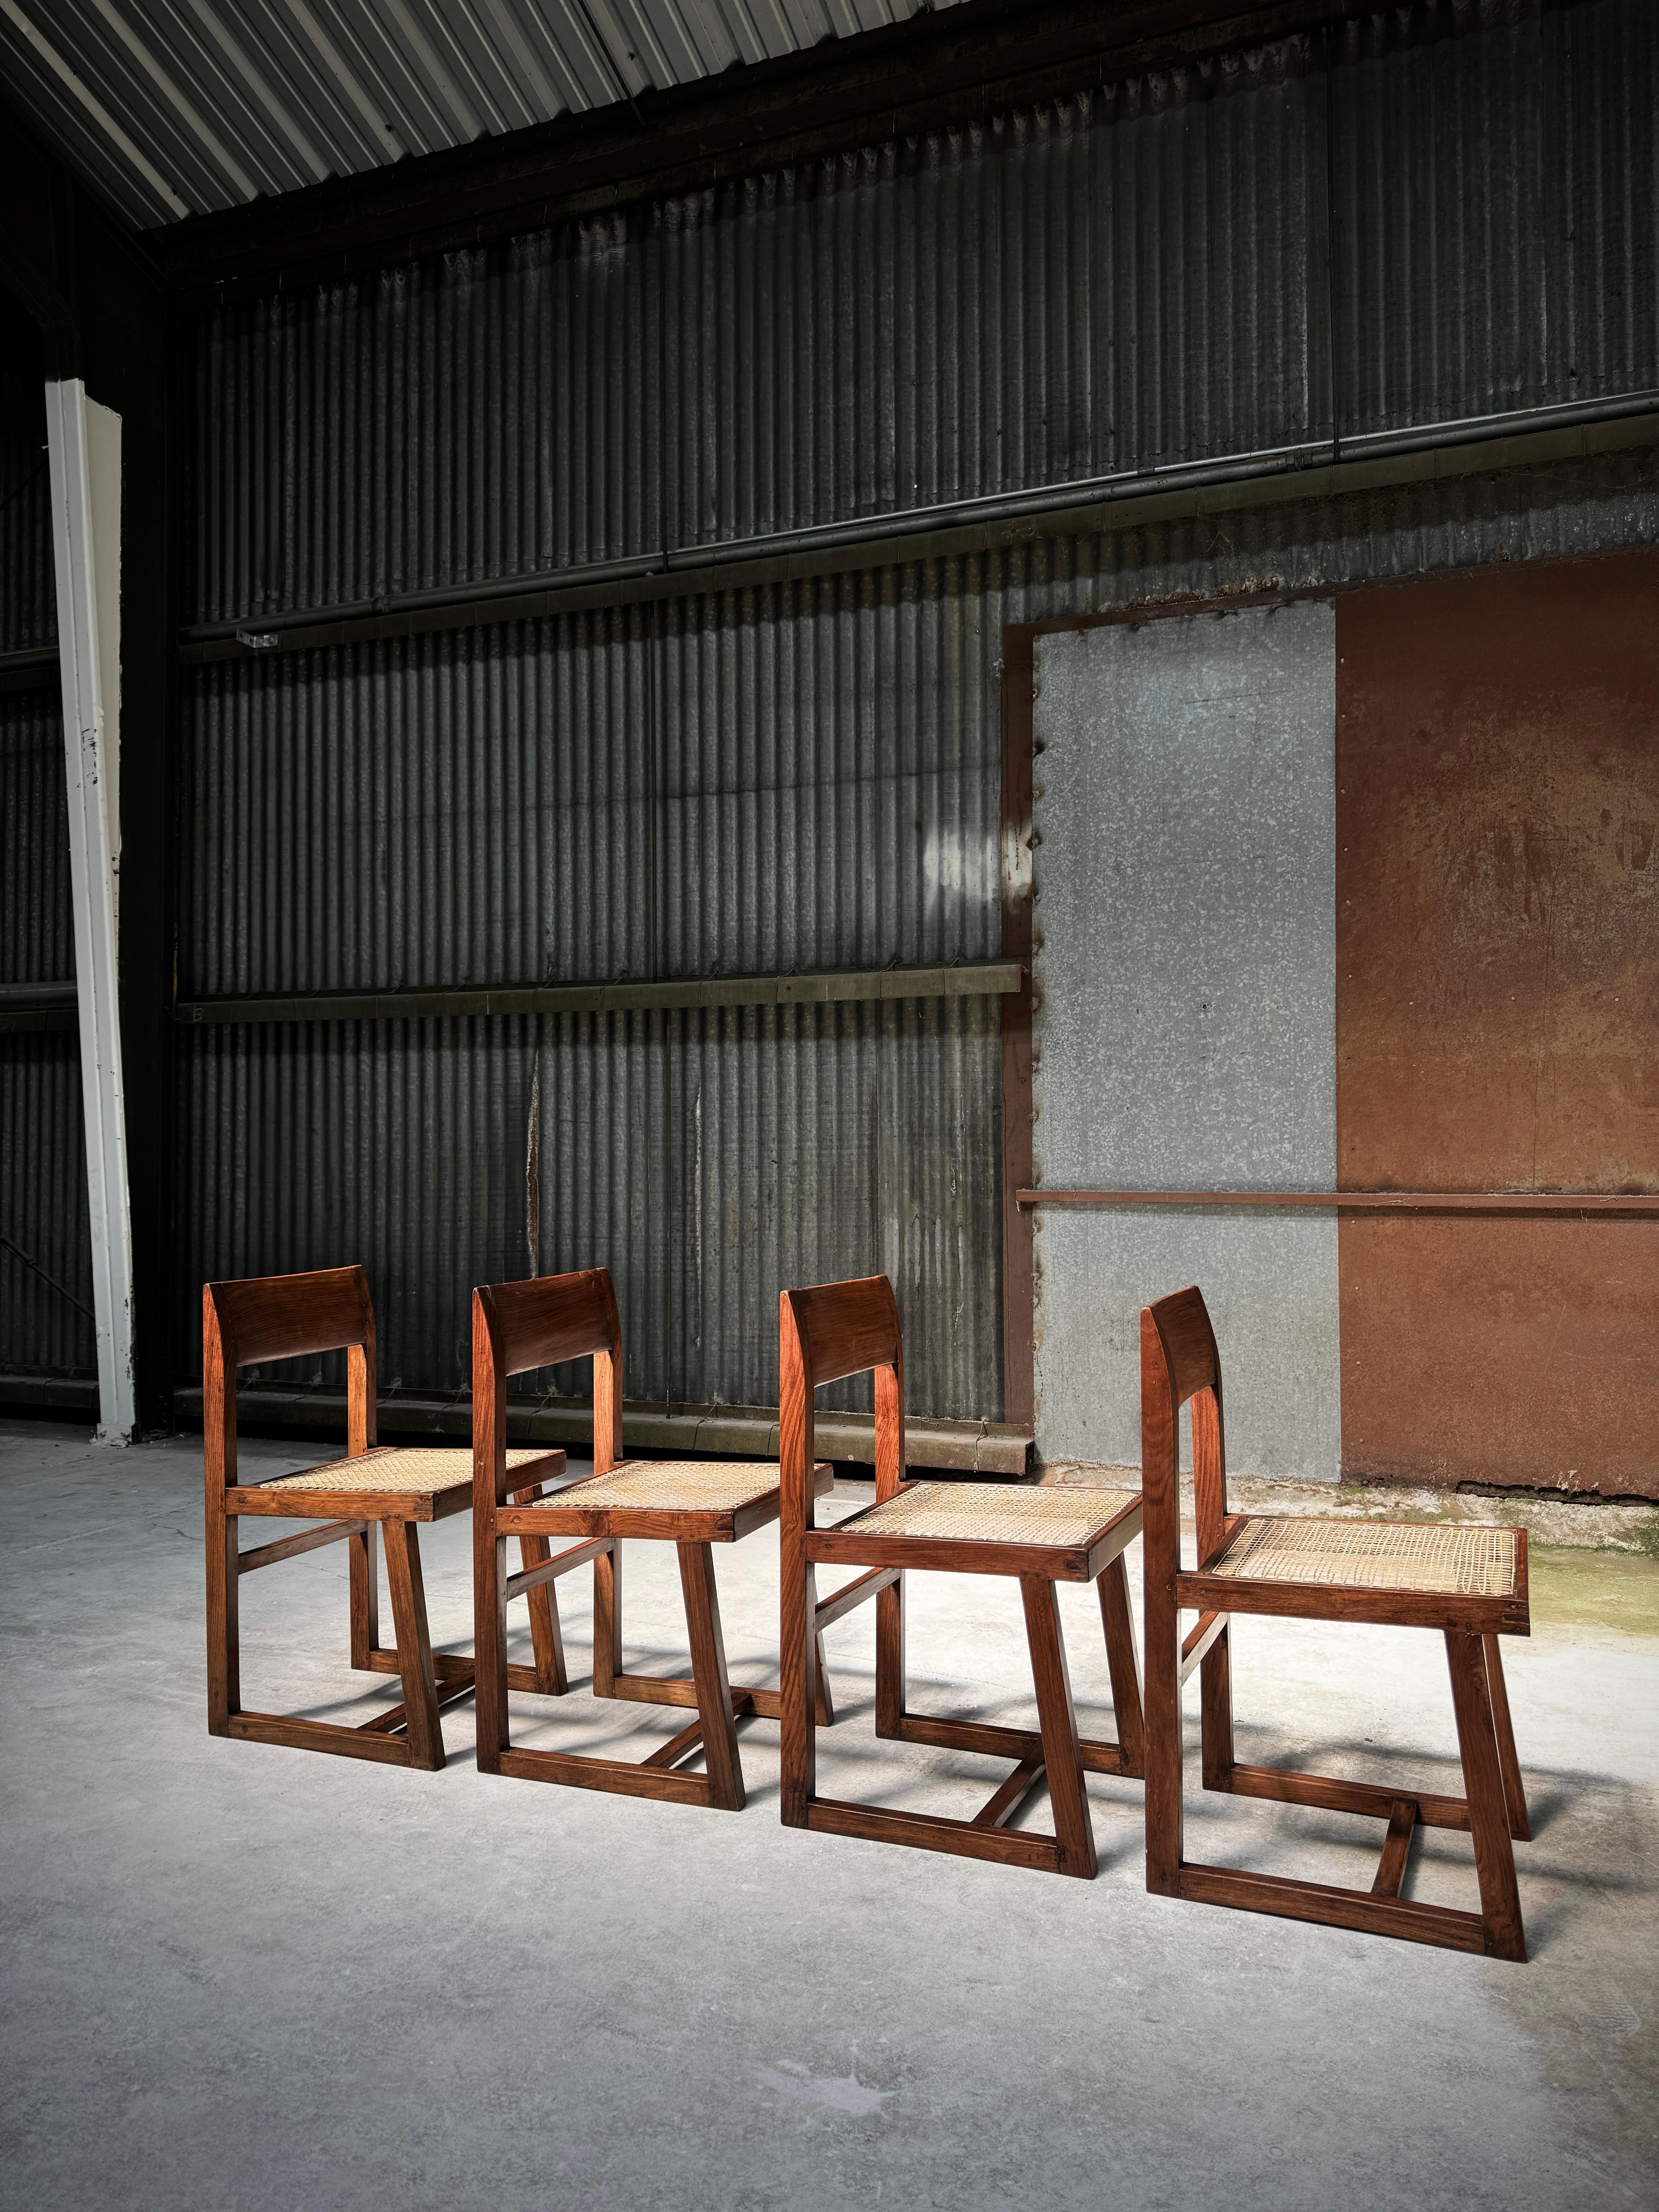 Cet ensemble de 4 chaises box a été utilisé au fil des décennies dans divers bâtiments administratifs de Chandigarh, en Inde. De petits éclats et rayures peuvent être trouvés dans chaque pièce et sont considérés comme faisant partie de son